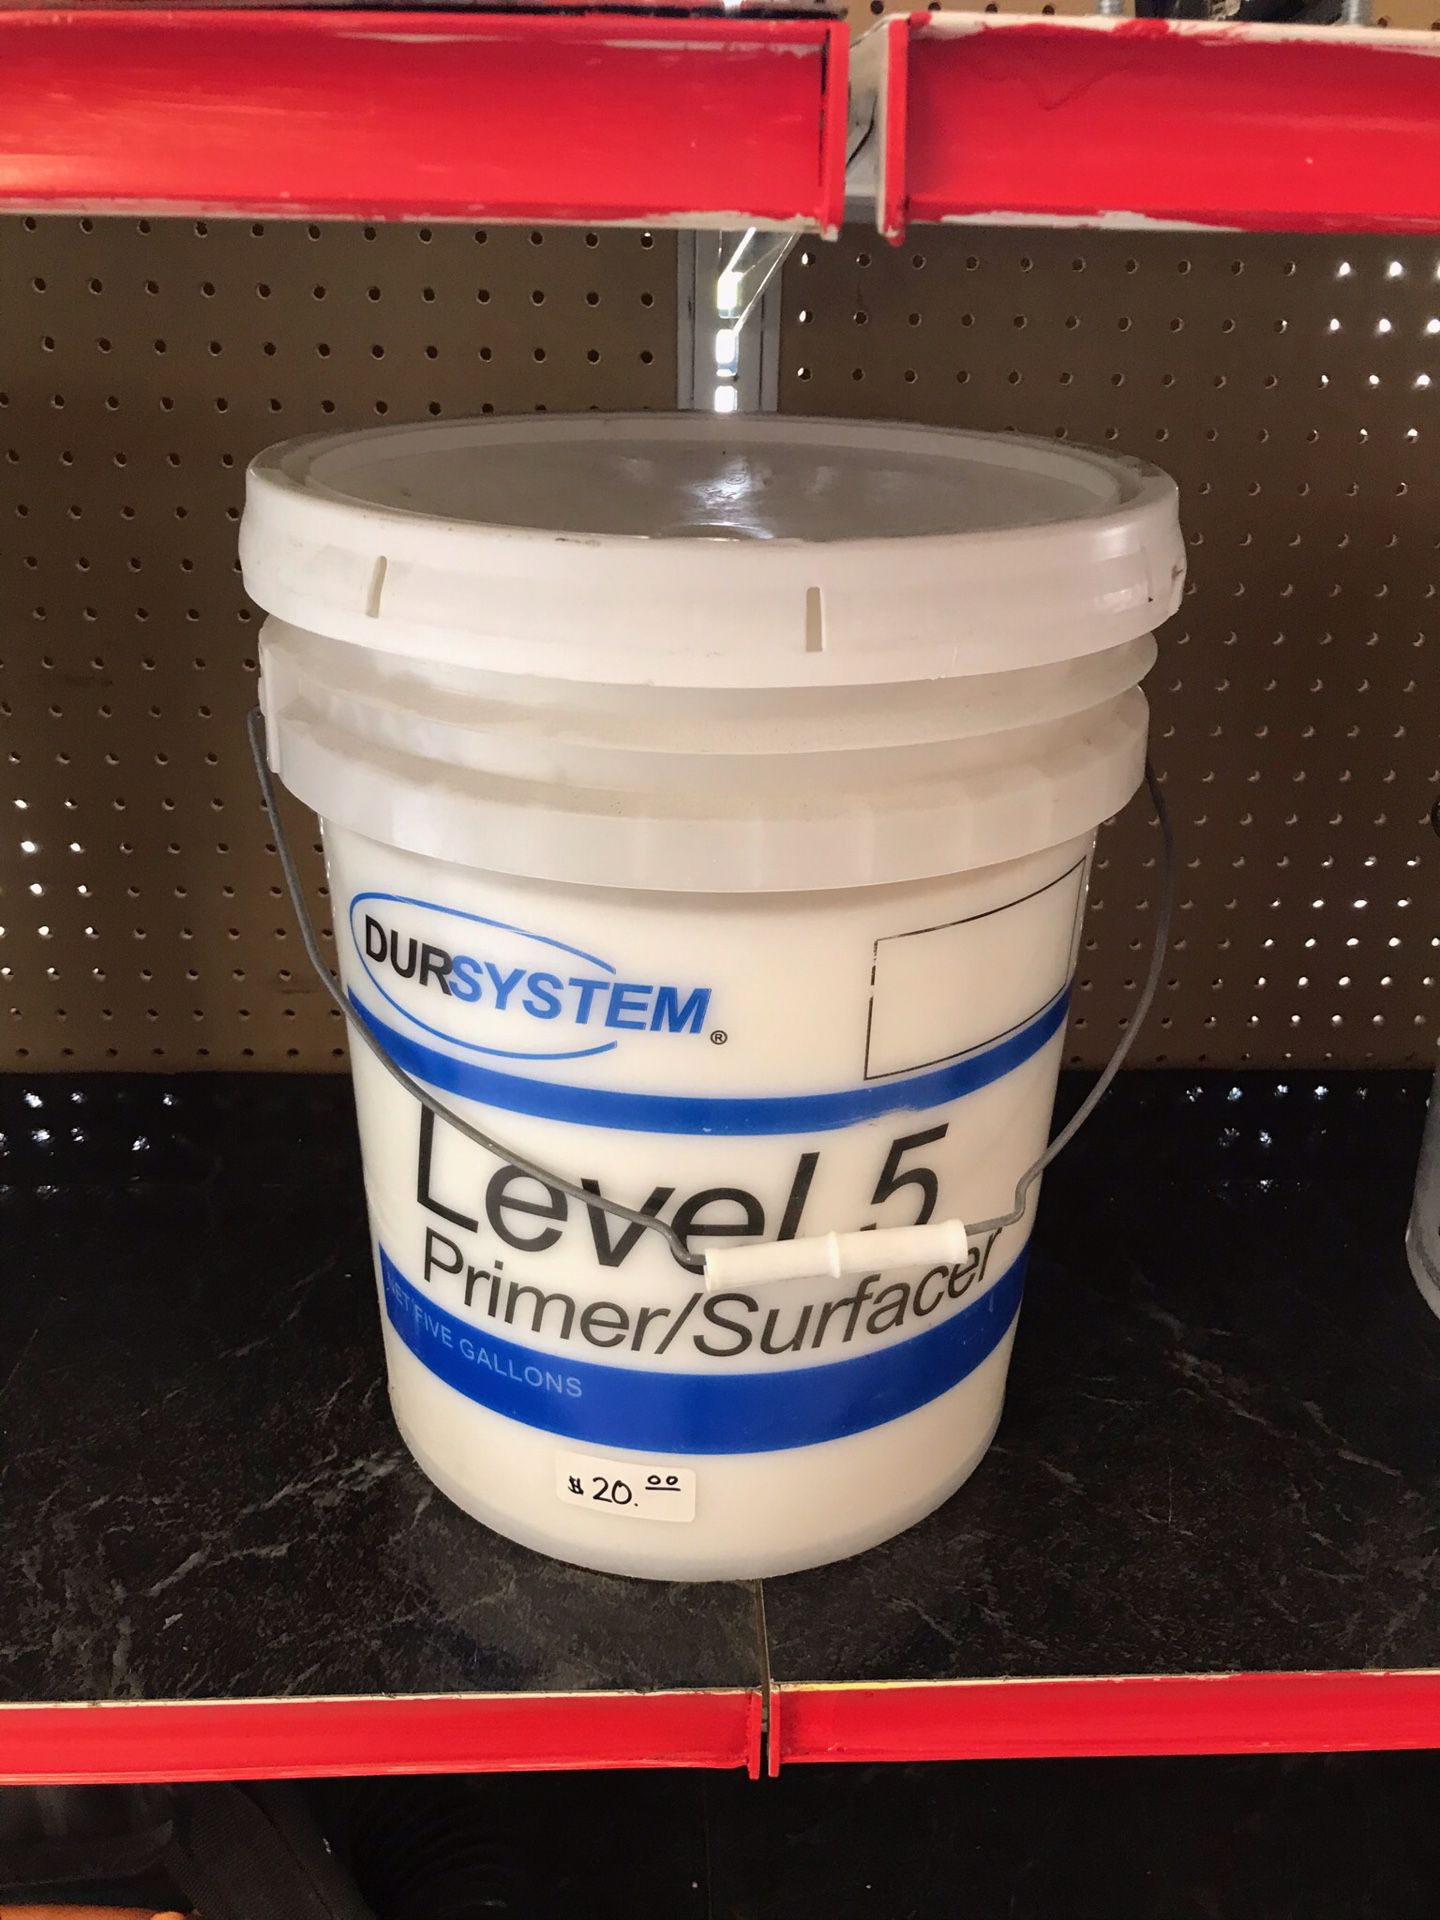 Dursystem Level 5 Primer/Surfacer 5 Gallons